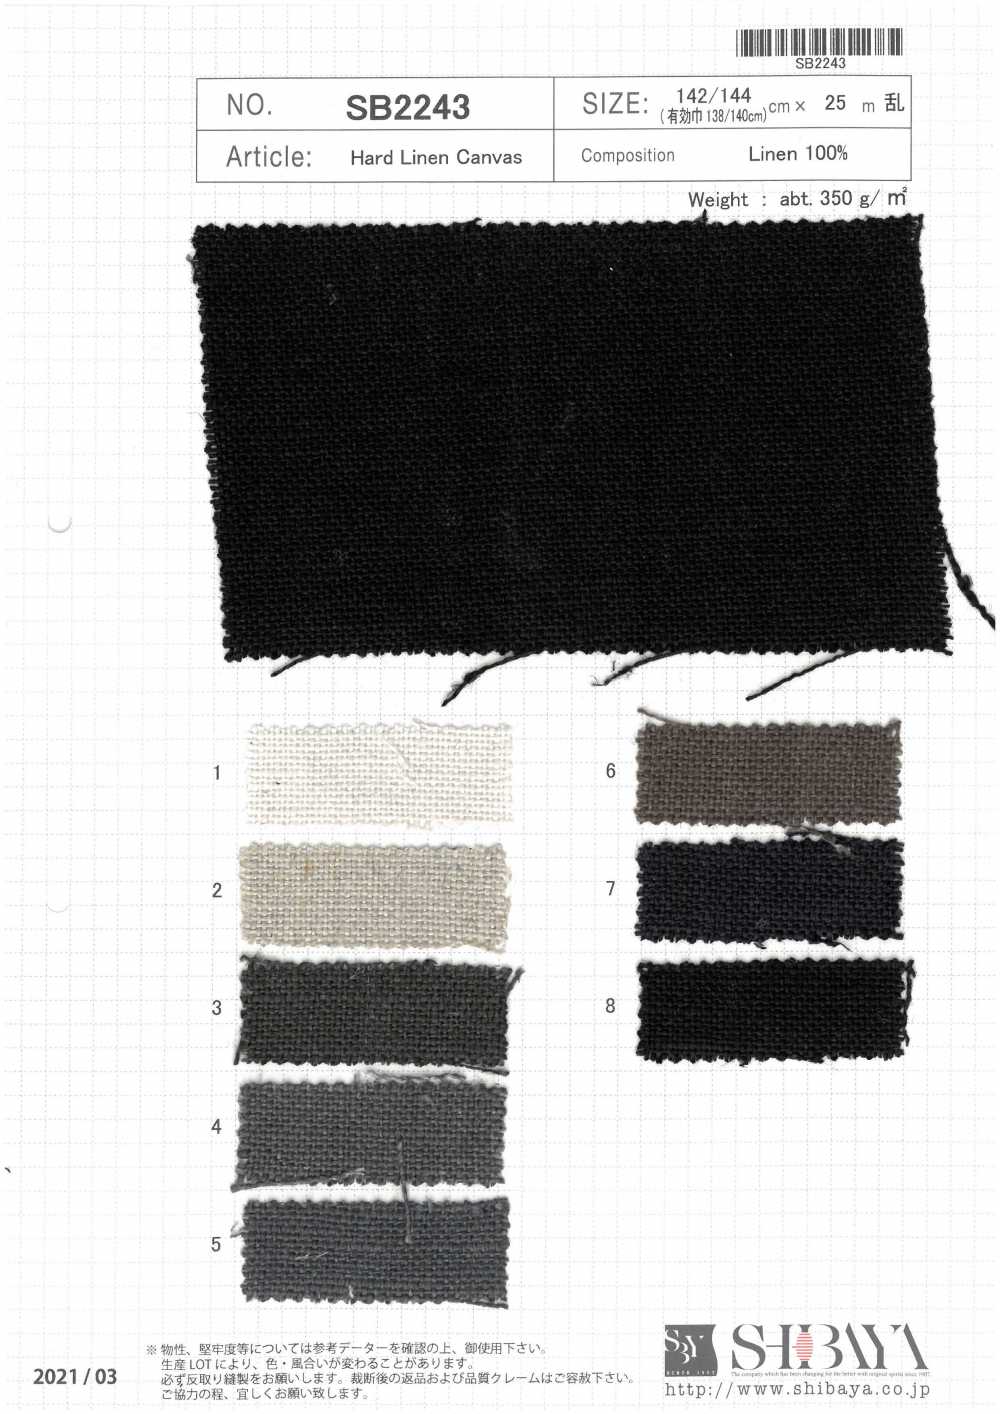 SB2243 Hard Linen Canvas[Textile / Fabric] SHIBAYA